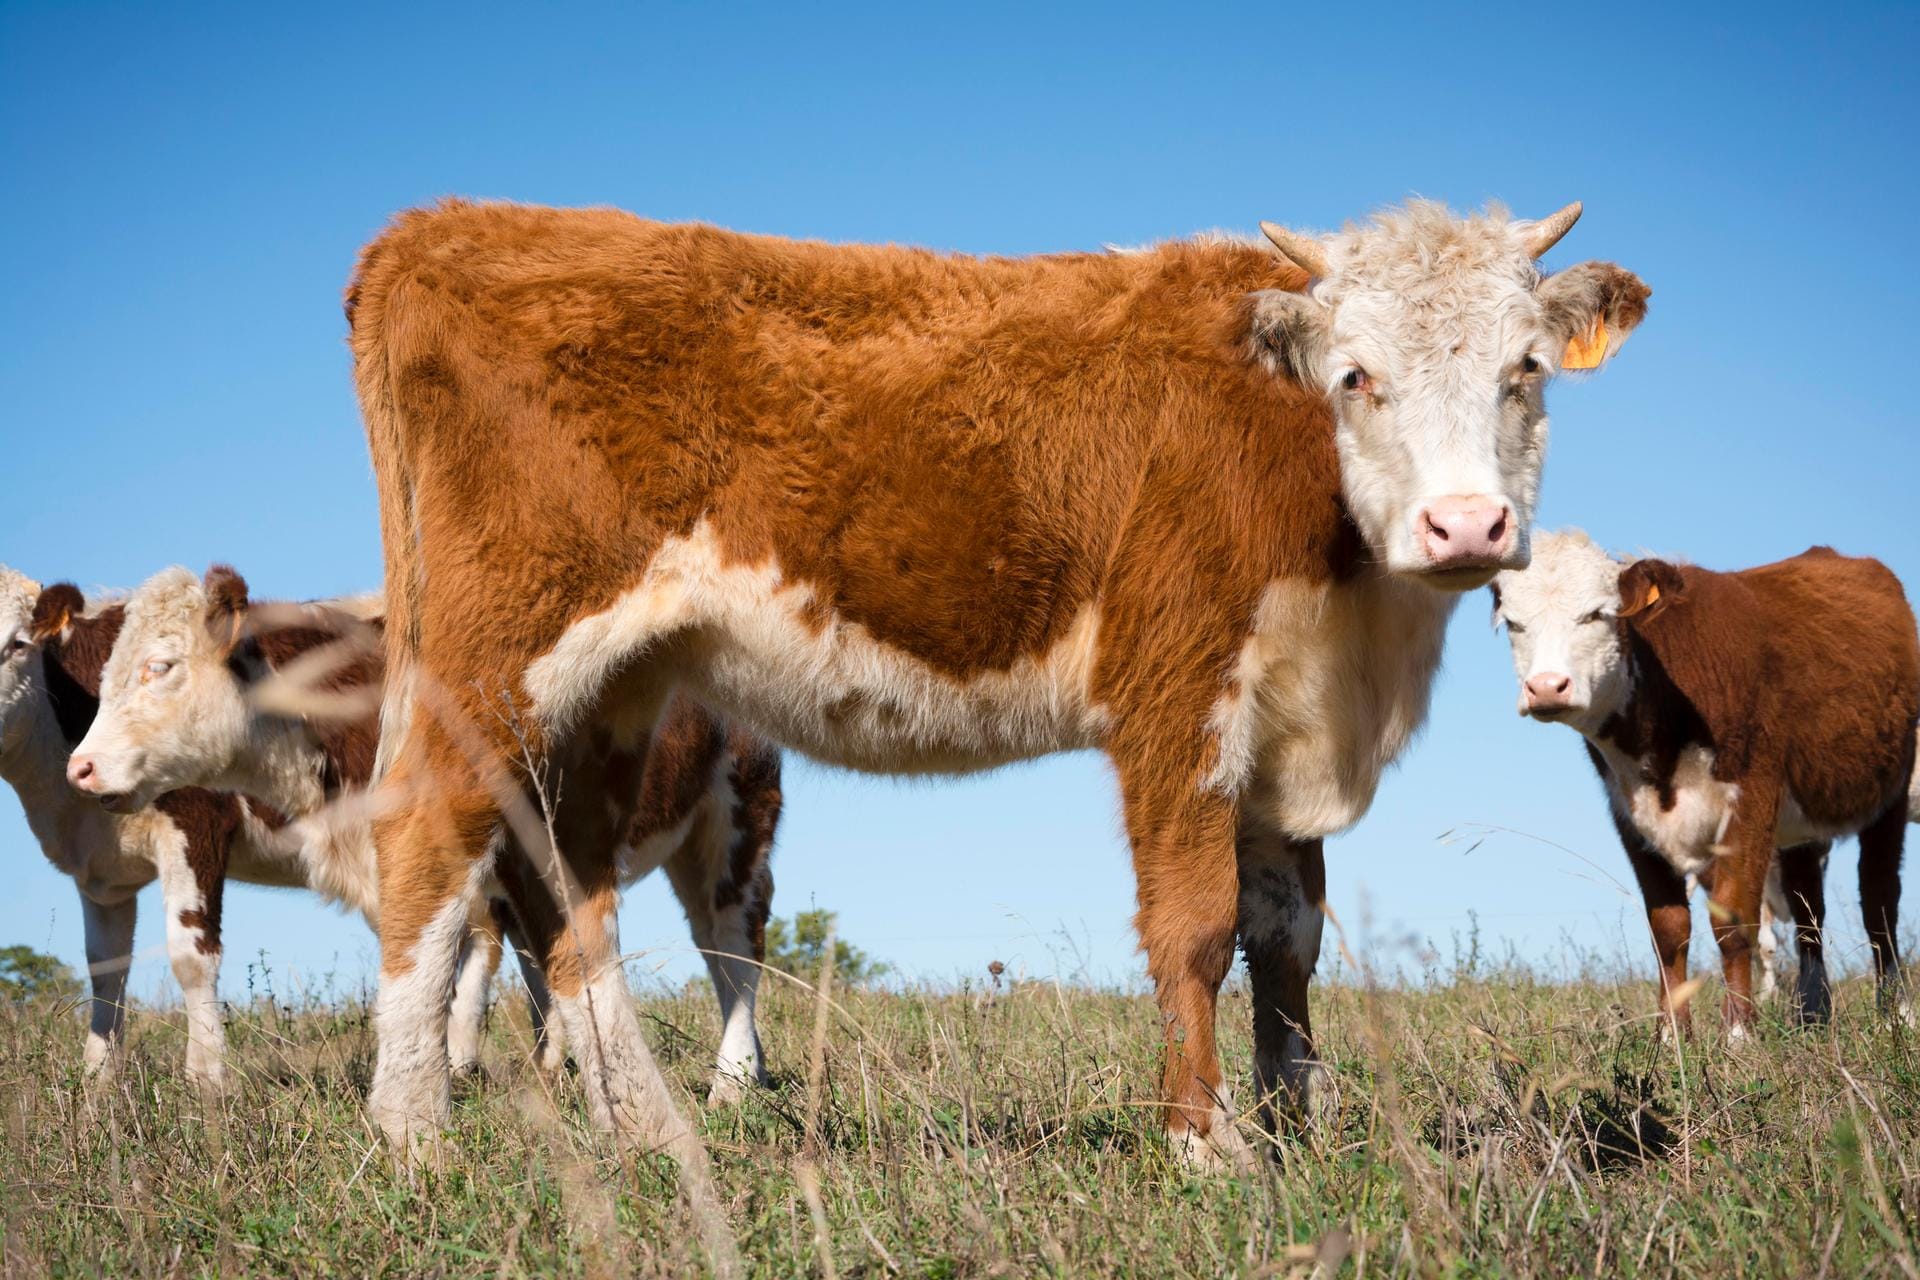 Braun-weiße Hereford-Rinder werden in mehr als 50 Ländern gezüchtet. Man trifft sie in den Weiten Russlands ebenso wie in Zuchtbetrieben in Israel, Japan, oder Mexiko.